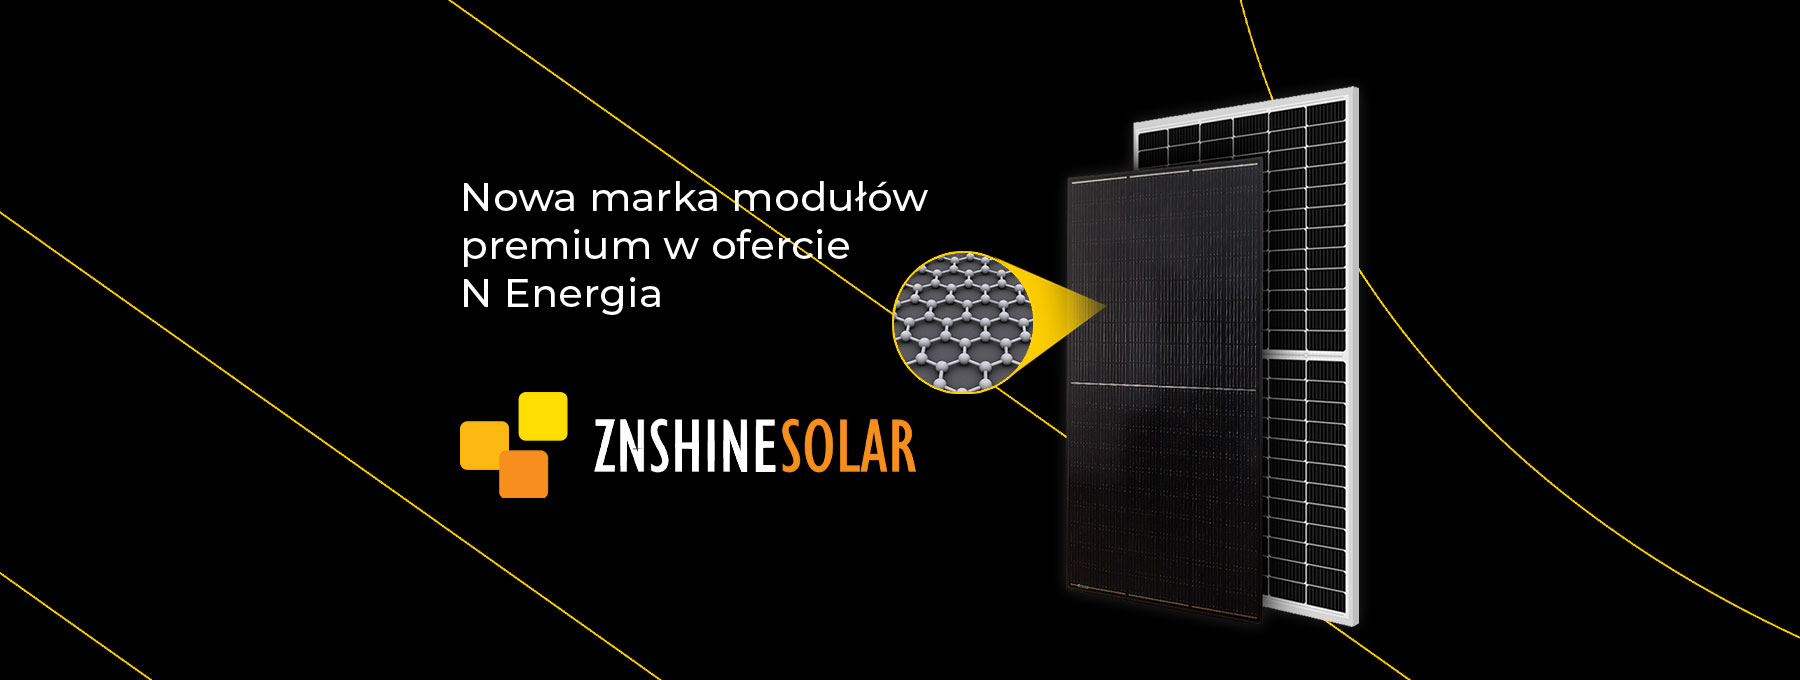 Moduły ZNShine w N Energia